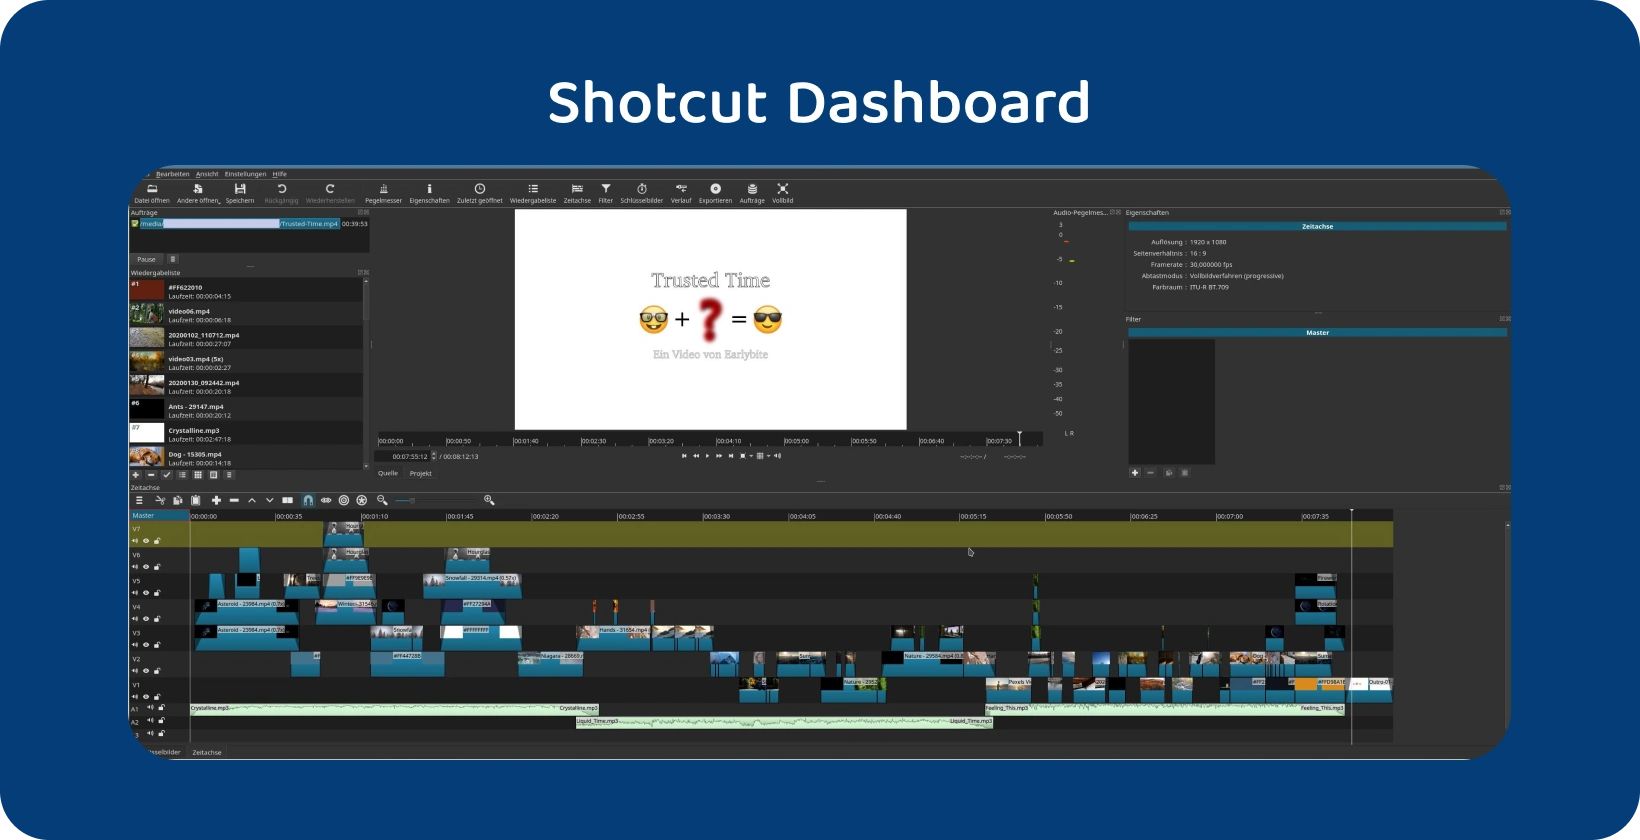 ซอฟต์แวร์ตัดต่อวิดีโอ Shotcut แสดงไทม์ไลน์ที่ซับซ้อนพร้อมหลายแทร็ก ซึ่งบ่งชี้ถึงโครงการขั้นสูง